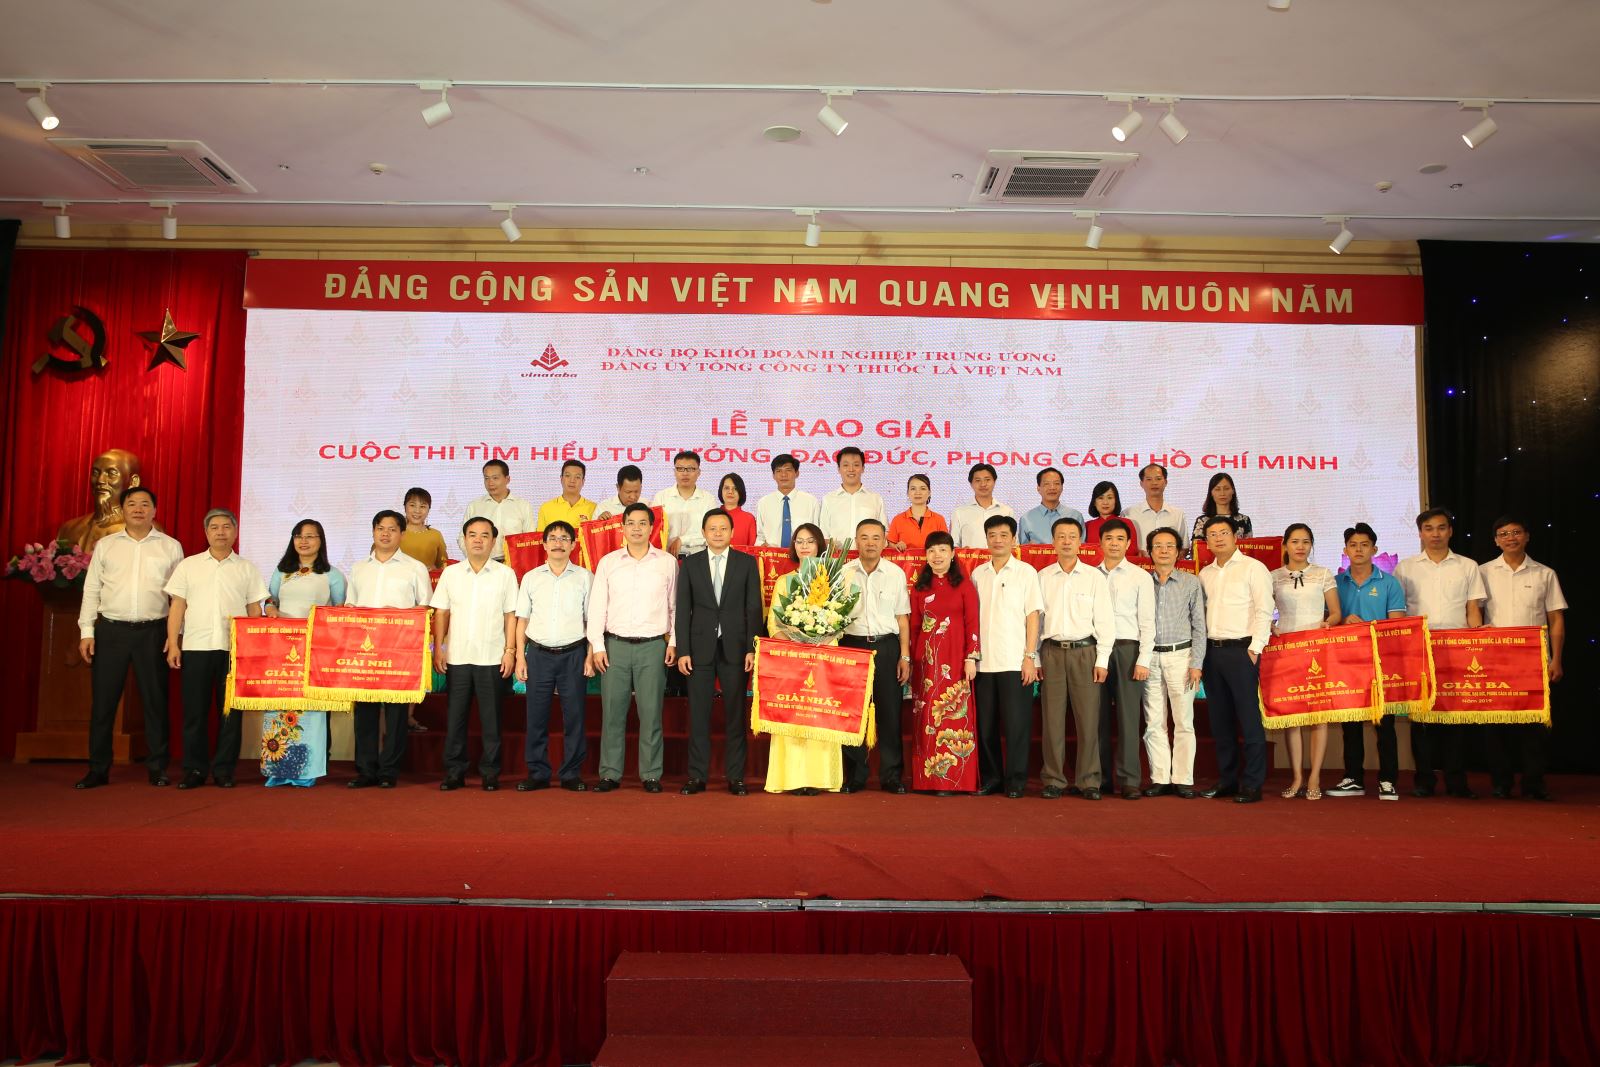 Lễ trao giải Cuộc thi Tìm hiểu tư tưởng, đạo đức, phong cách Hồ Chí Minh - 2019.